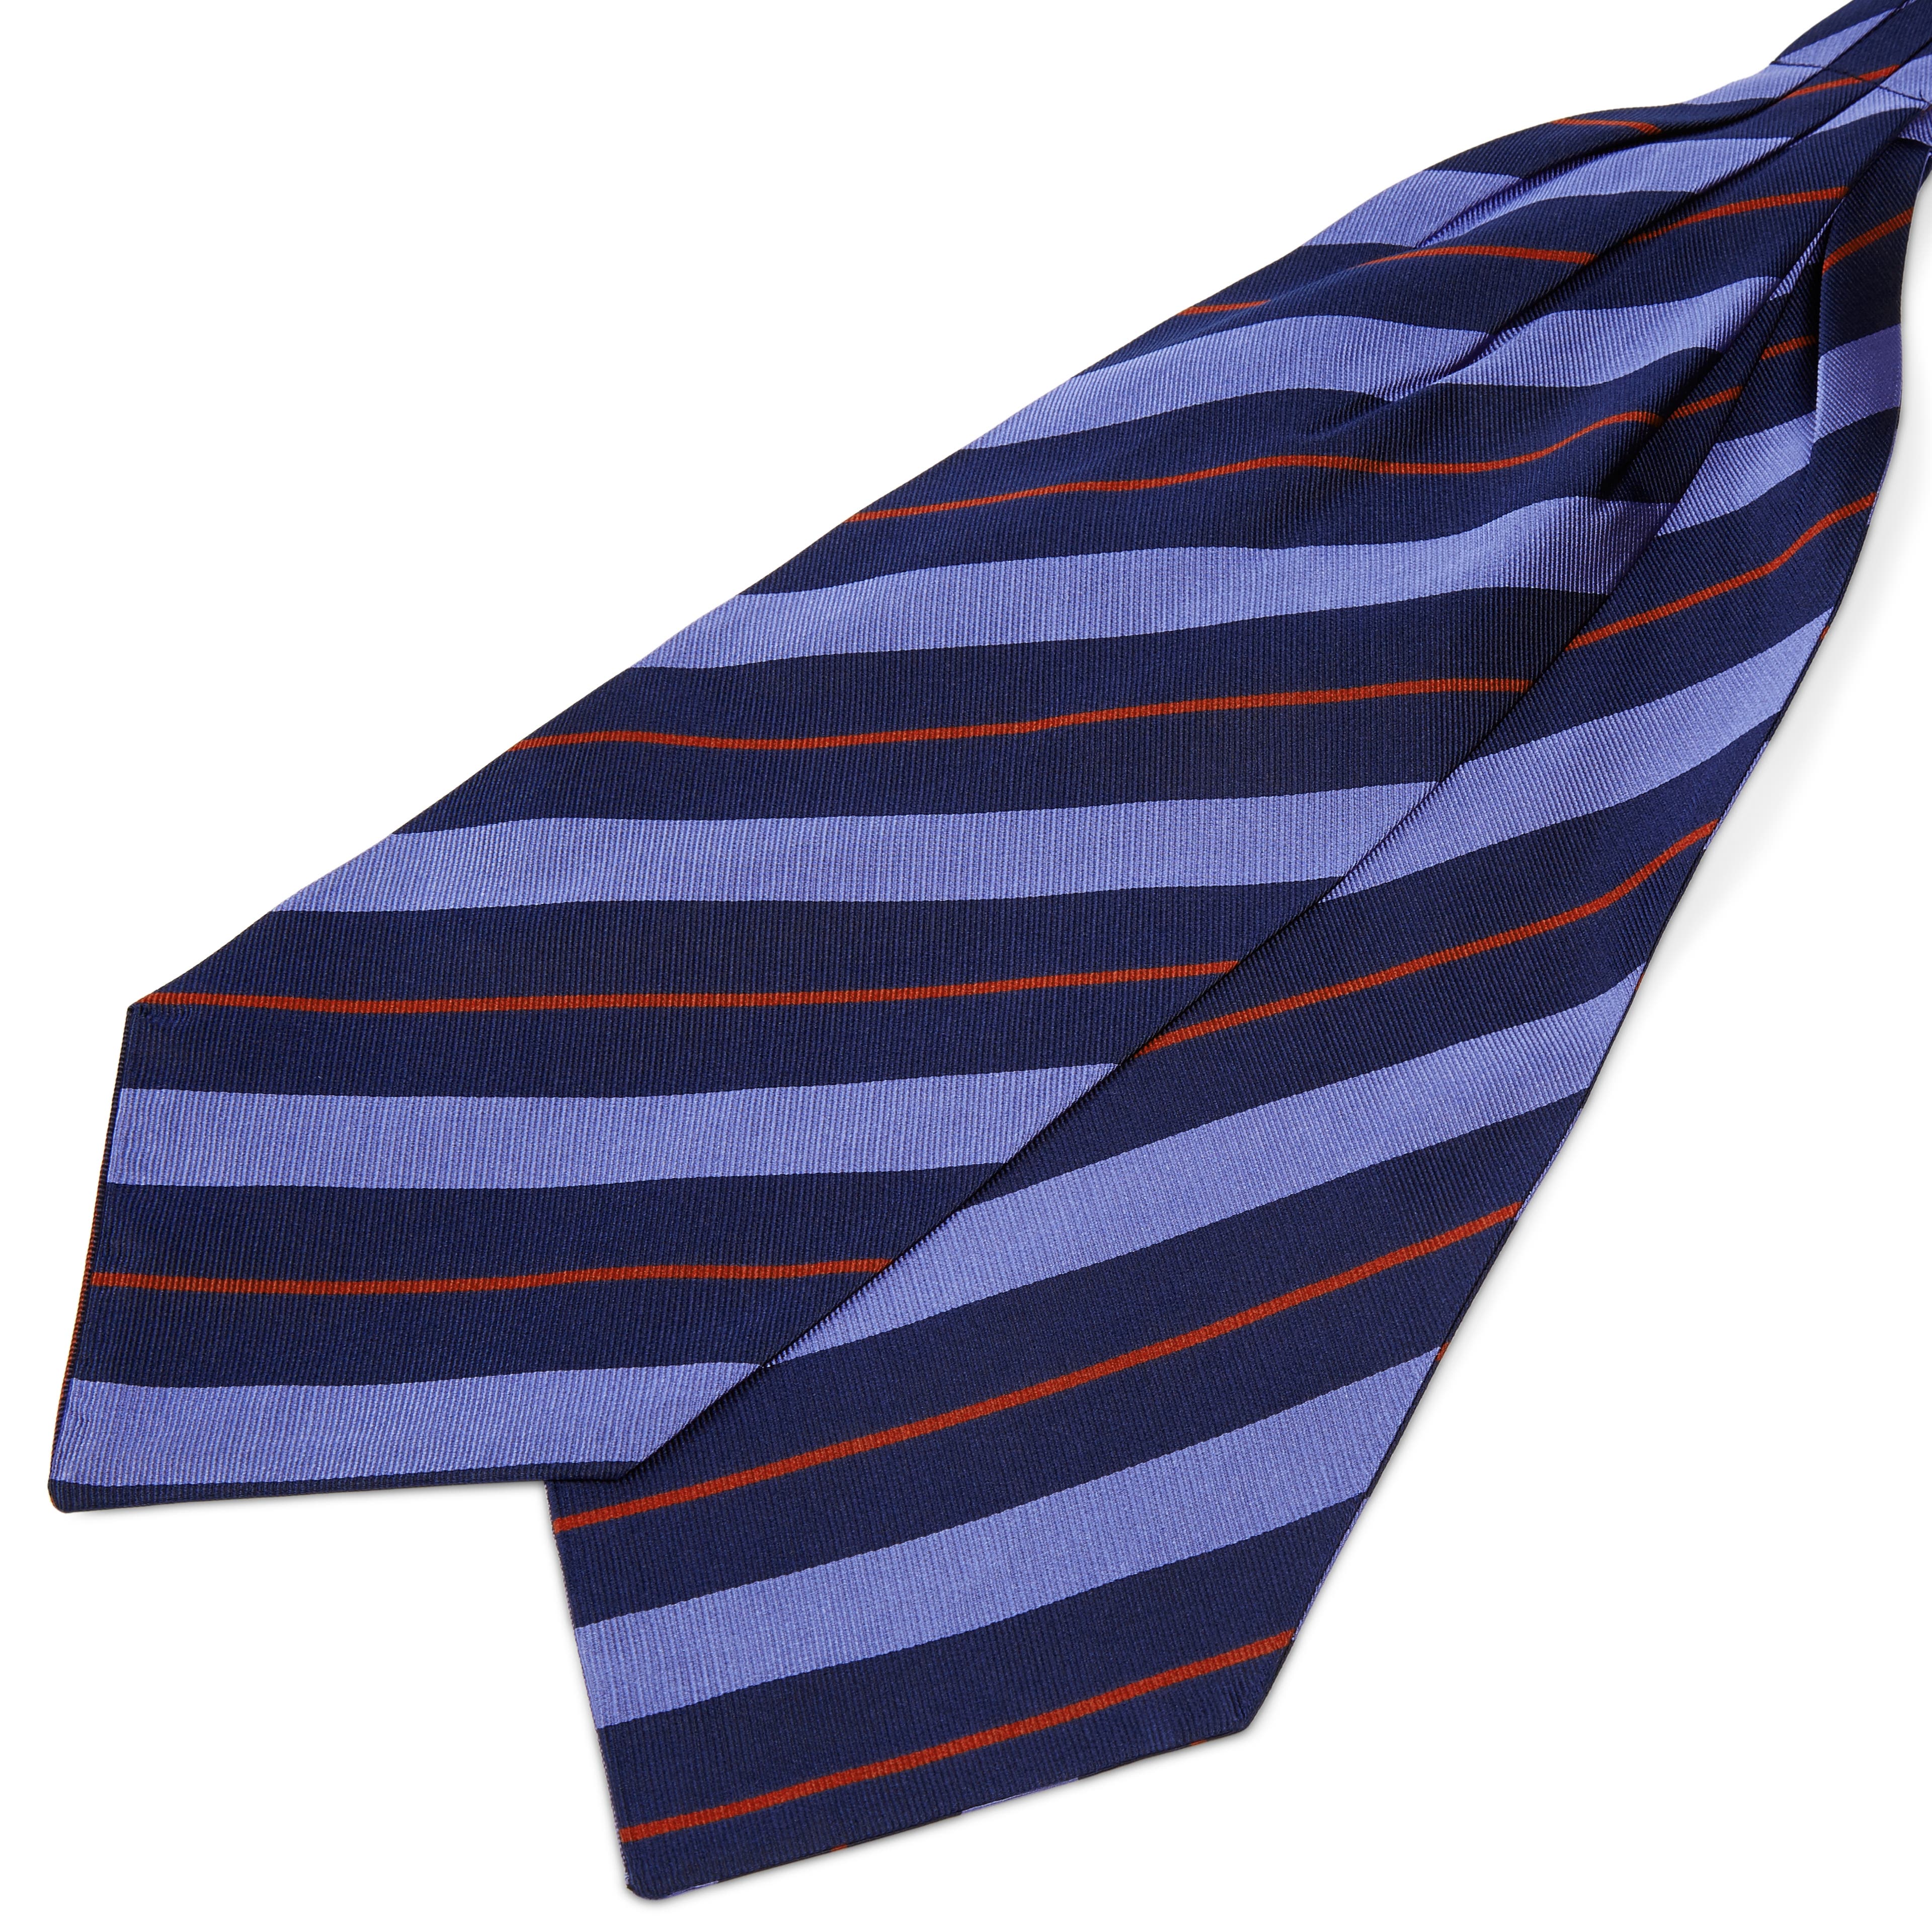 Cravatta ascot in seta blu navy con fantasia a righe azzurre e rosse